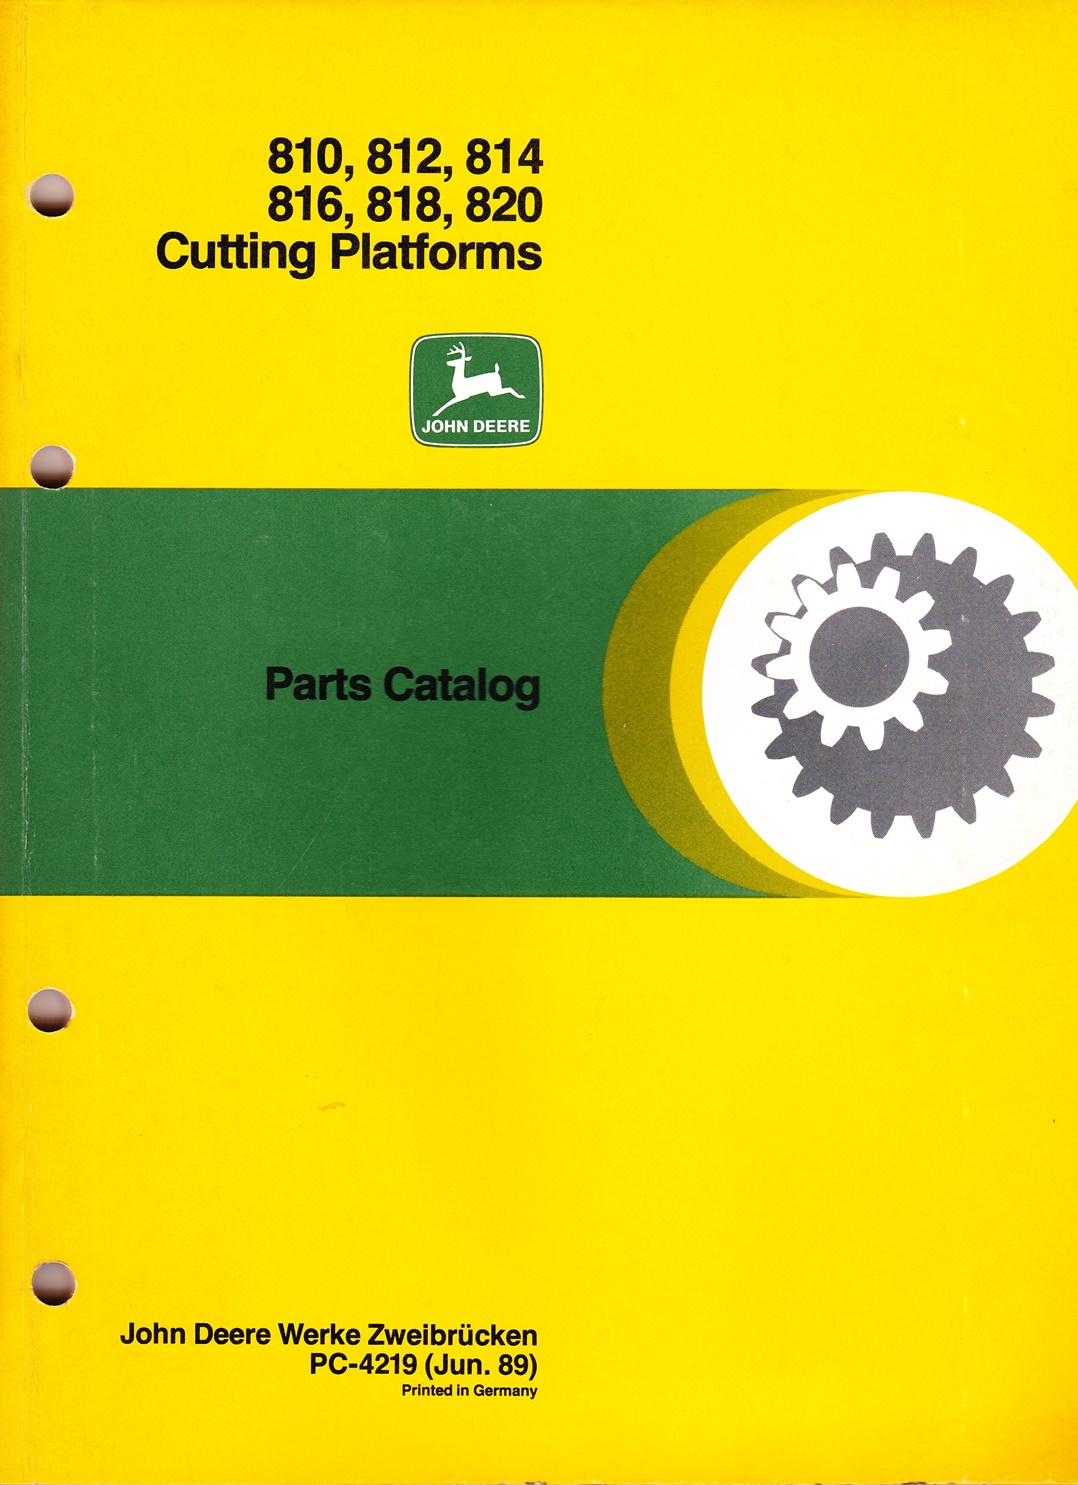 Ersatzteilkatalog John Deere, Cutting Platforms 810, 812, 814, 816, 818, 820